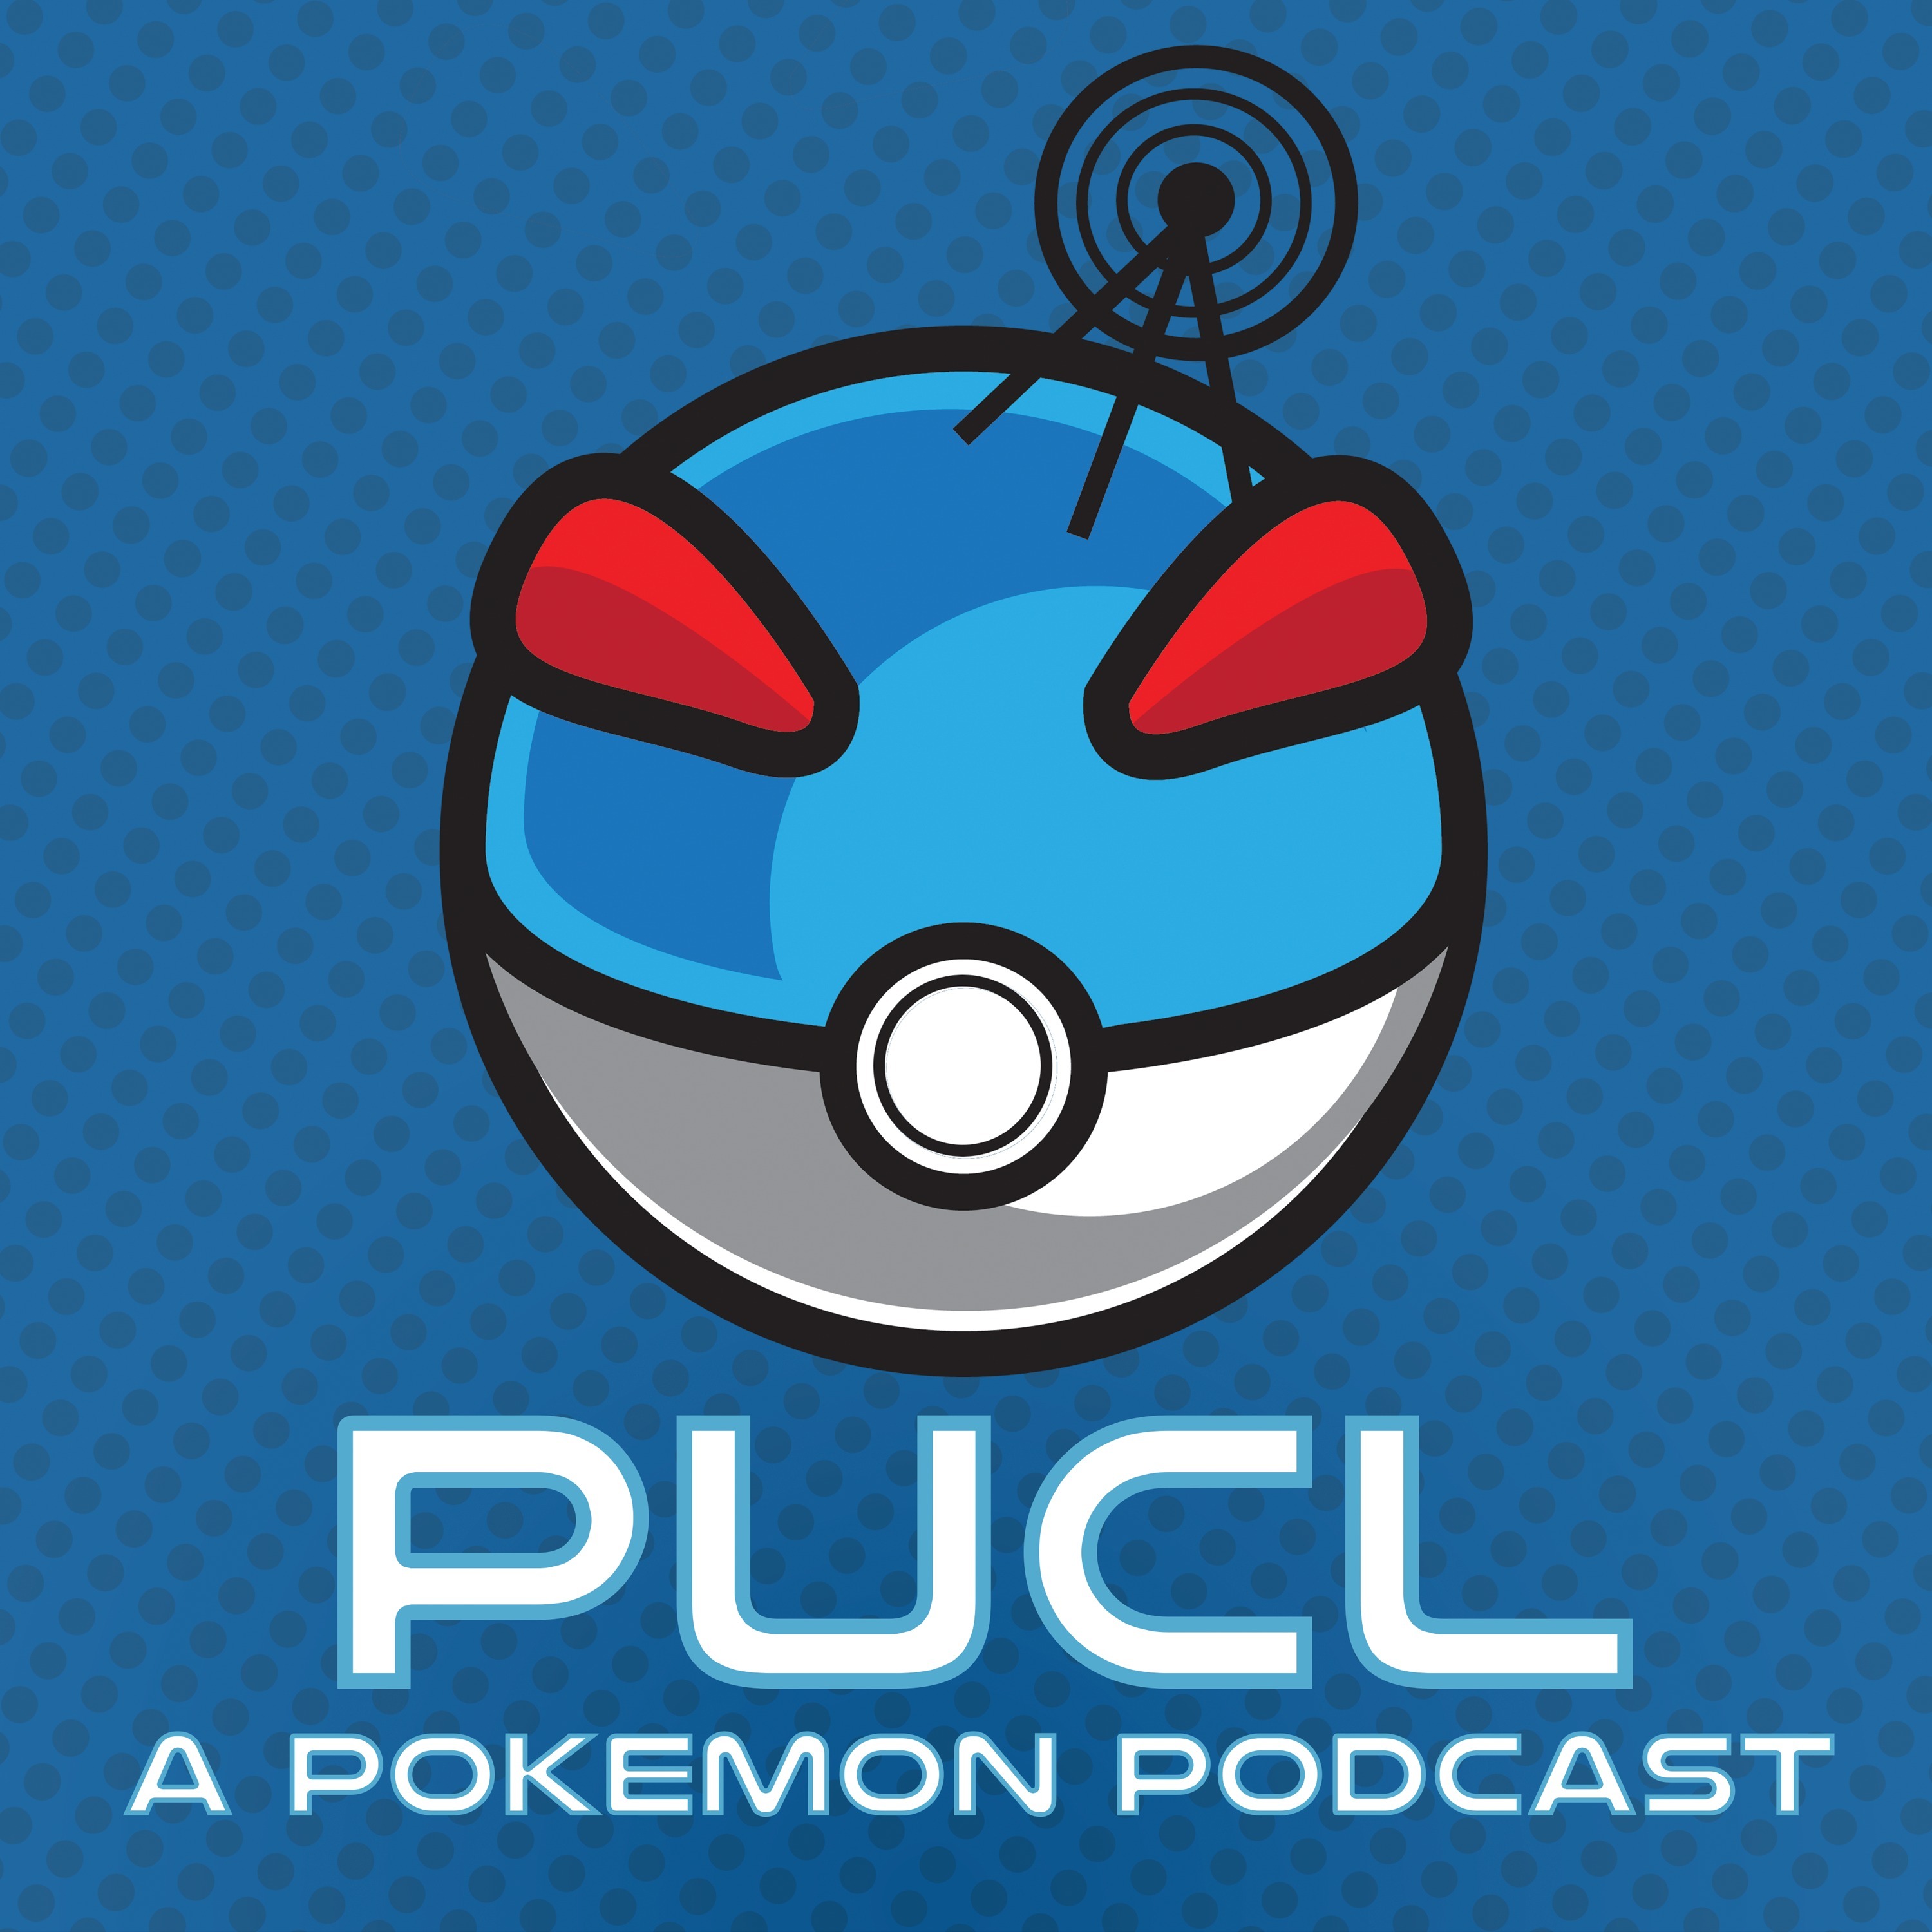 Pokemon Legends Arceus Expectations! | PUCL #528